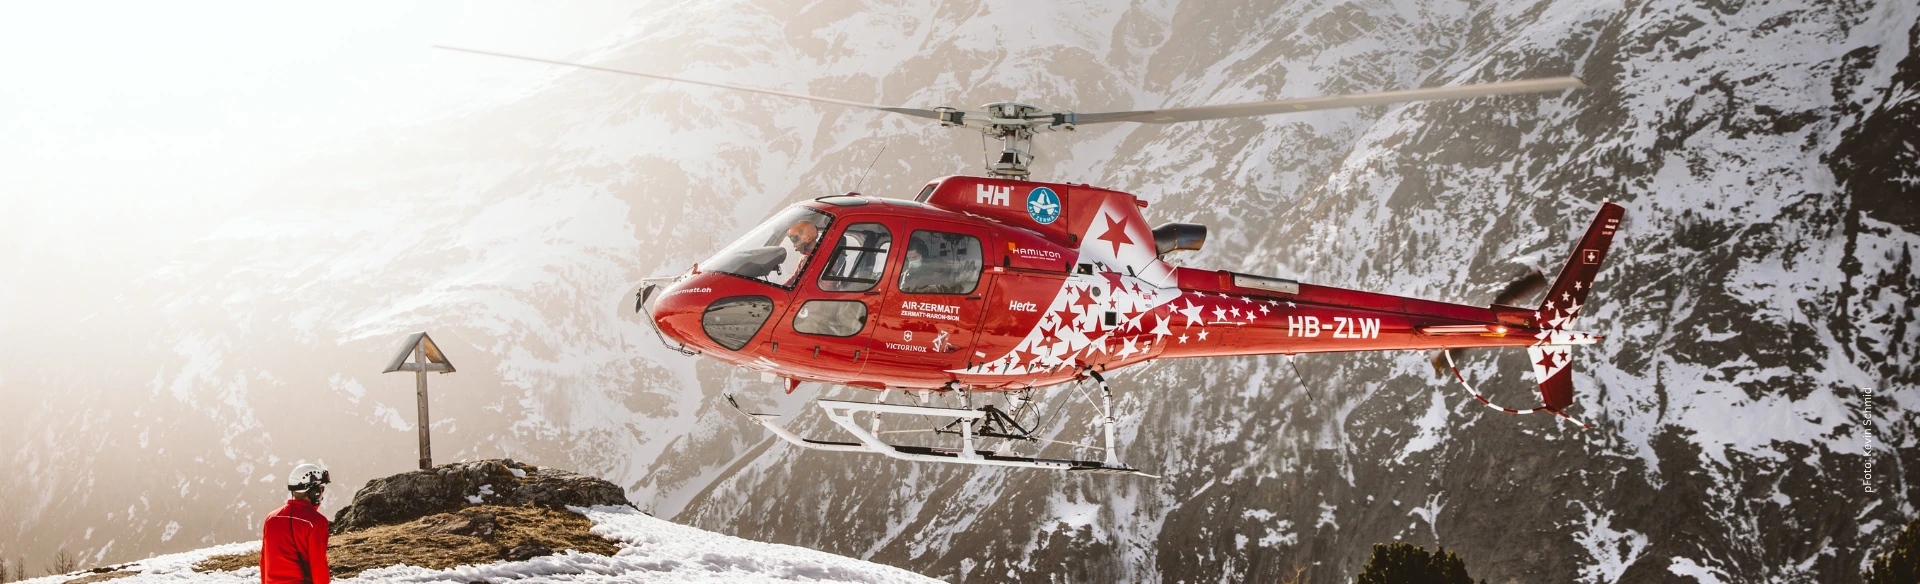 Fly For Fun Flugsicherheit: Rettungshubschrauber bei der Landung in winterlichen Hochgebirge mit Bergretter